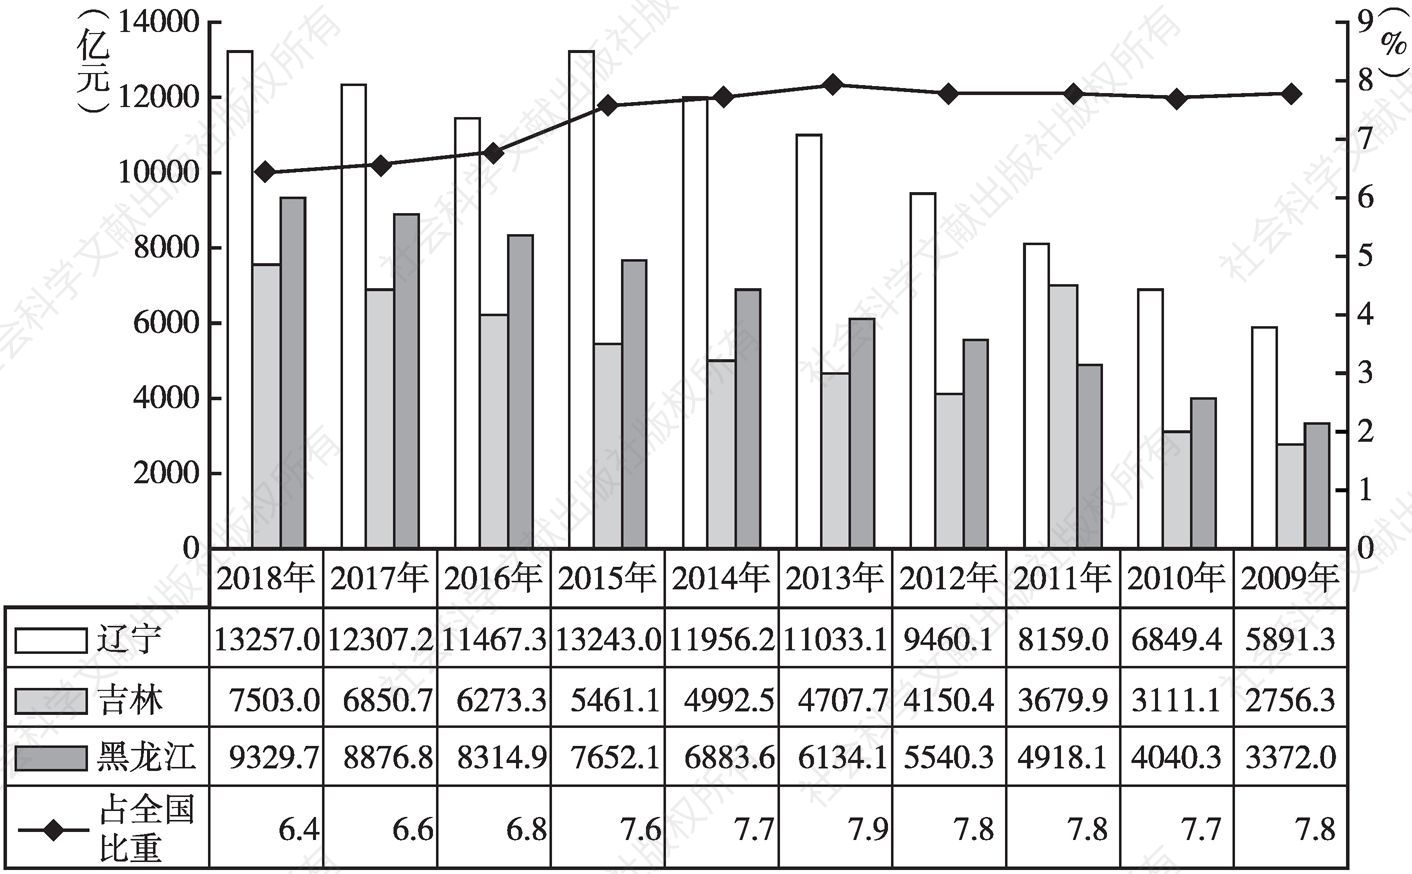 图2 2009～2018年东北三省农业增加值及占全国比重